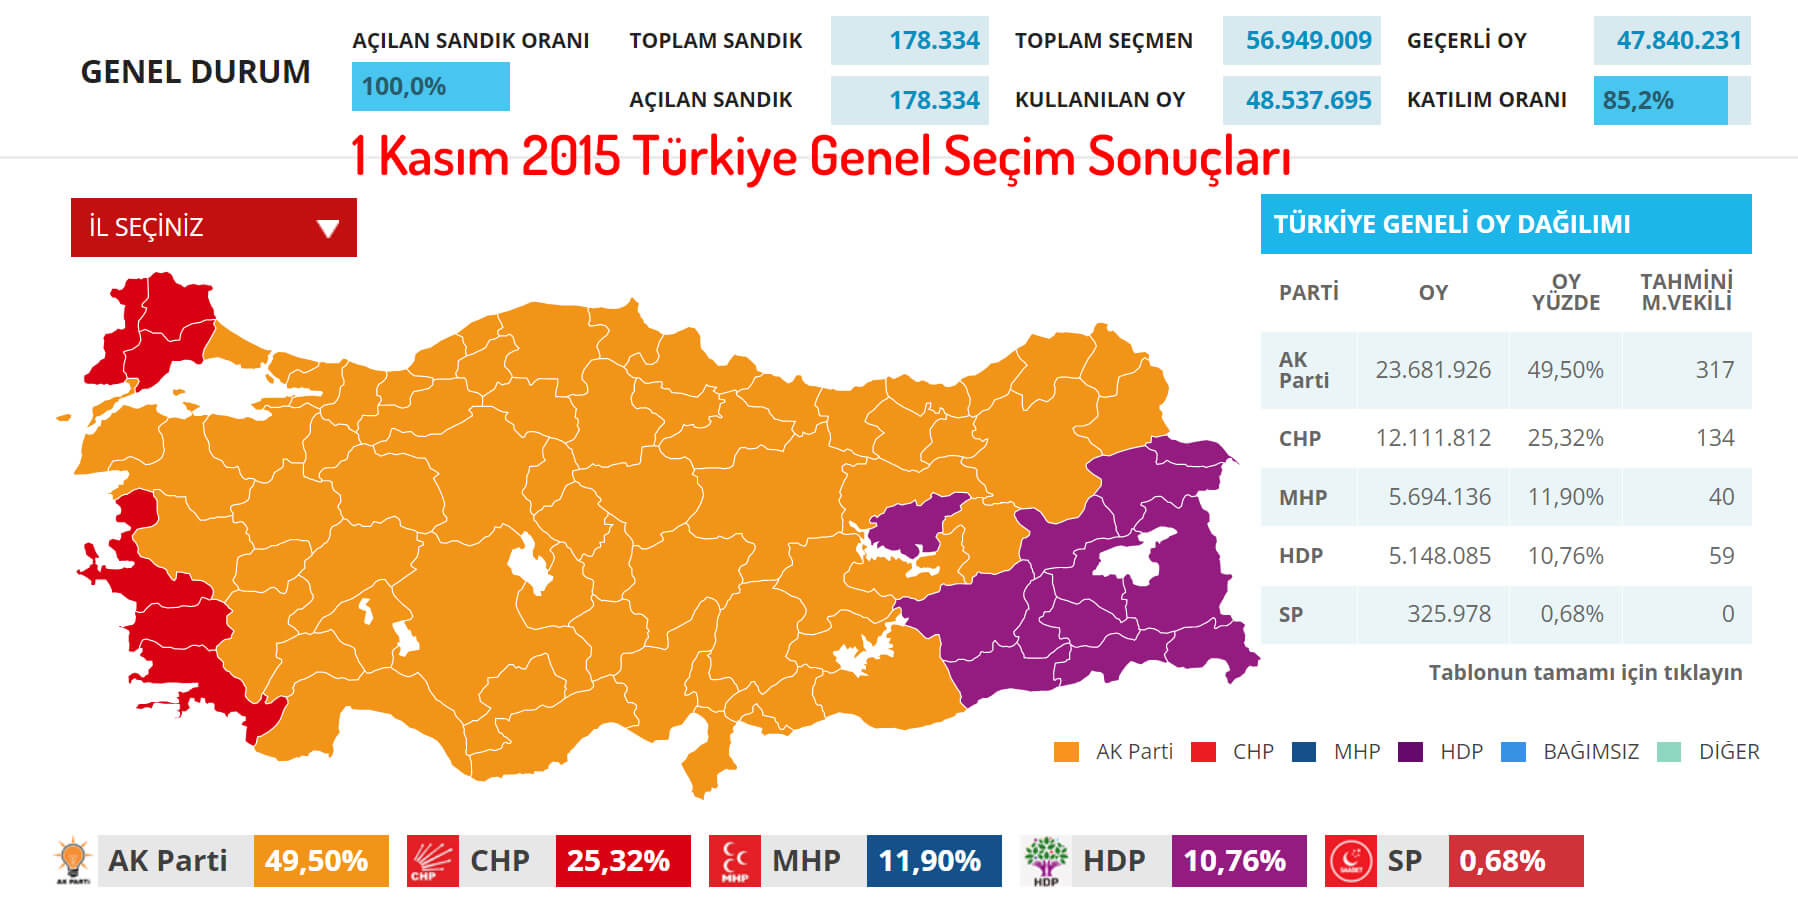 1 Kasım 2015 Türkiye Genel Seçim Sonuçları